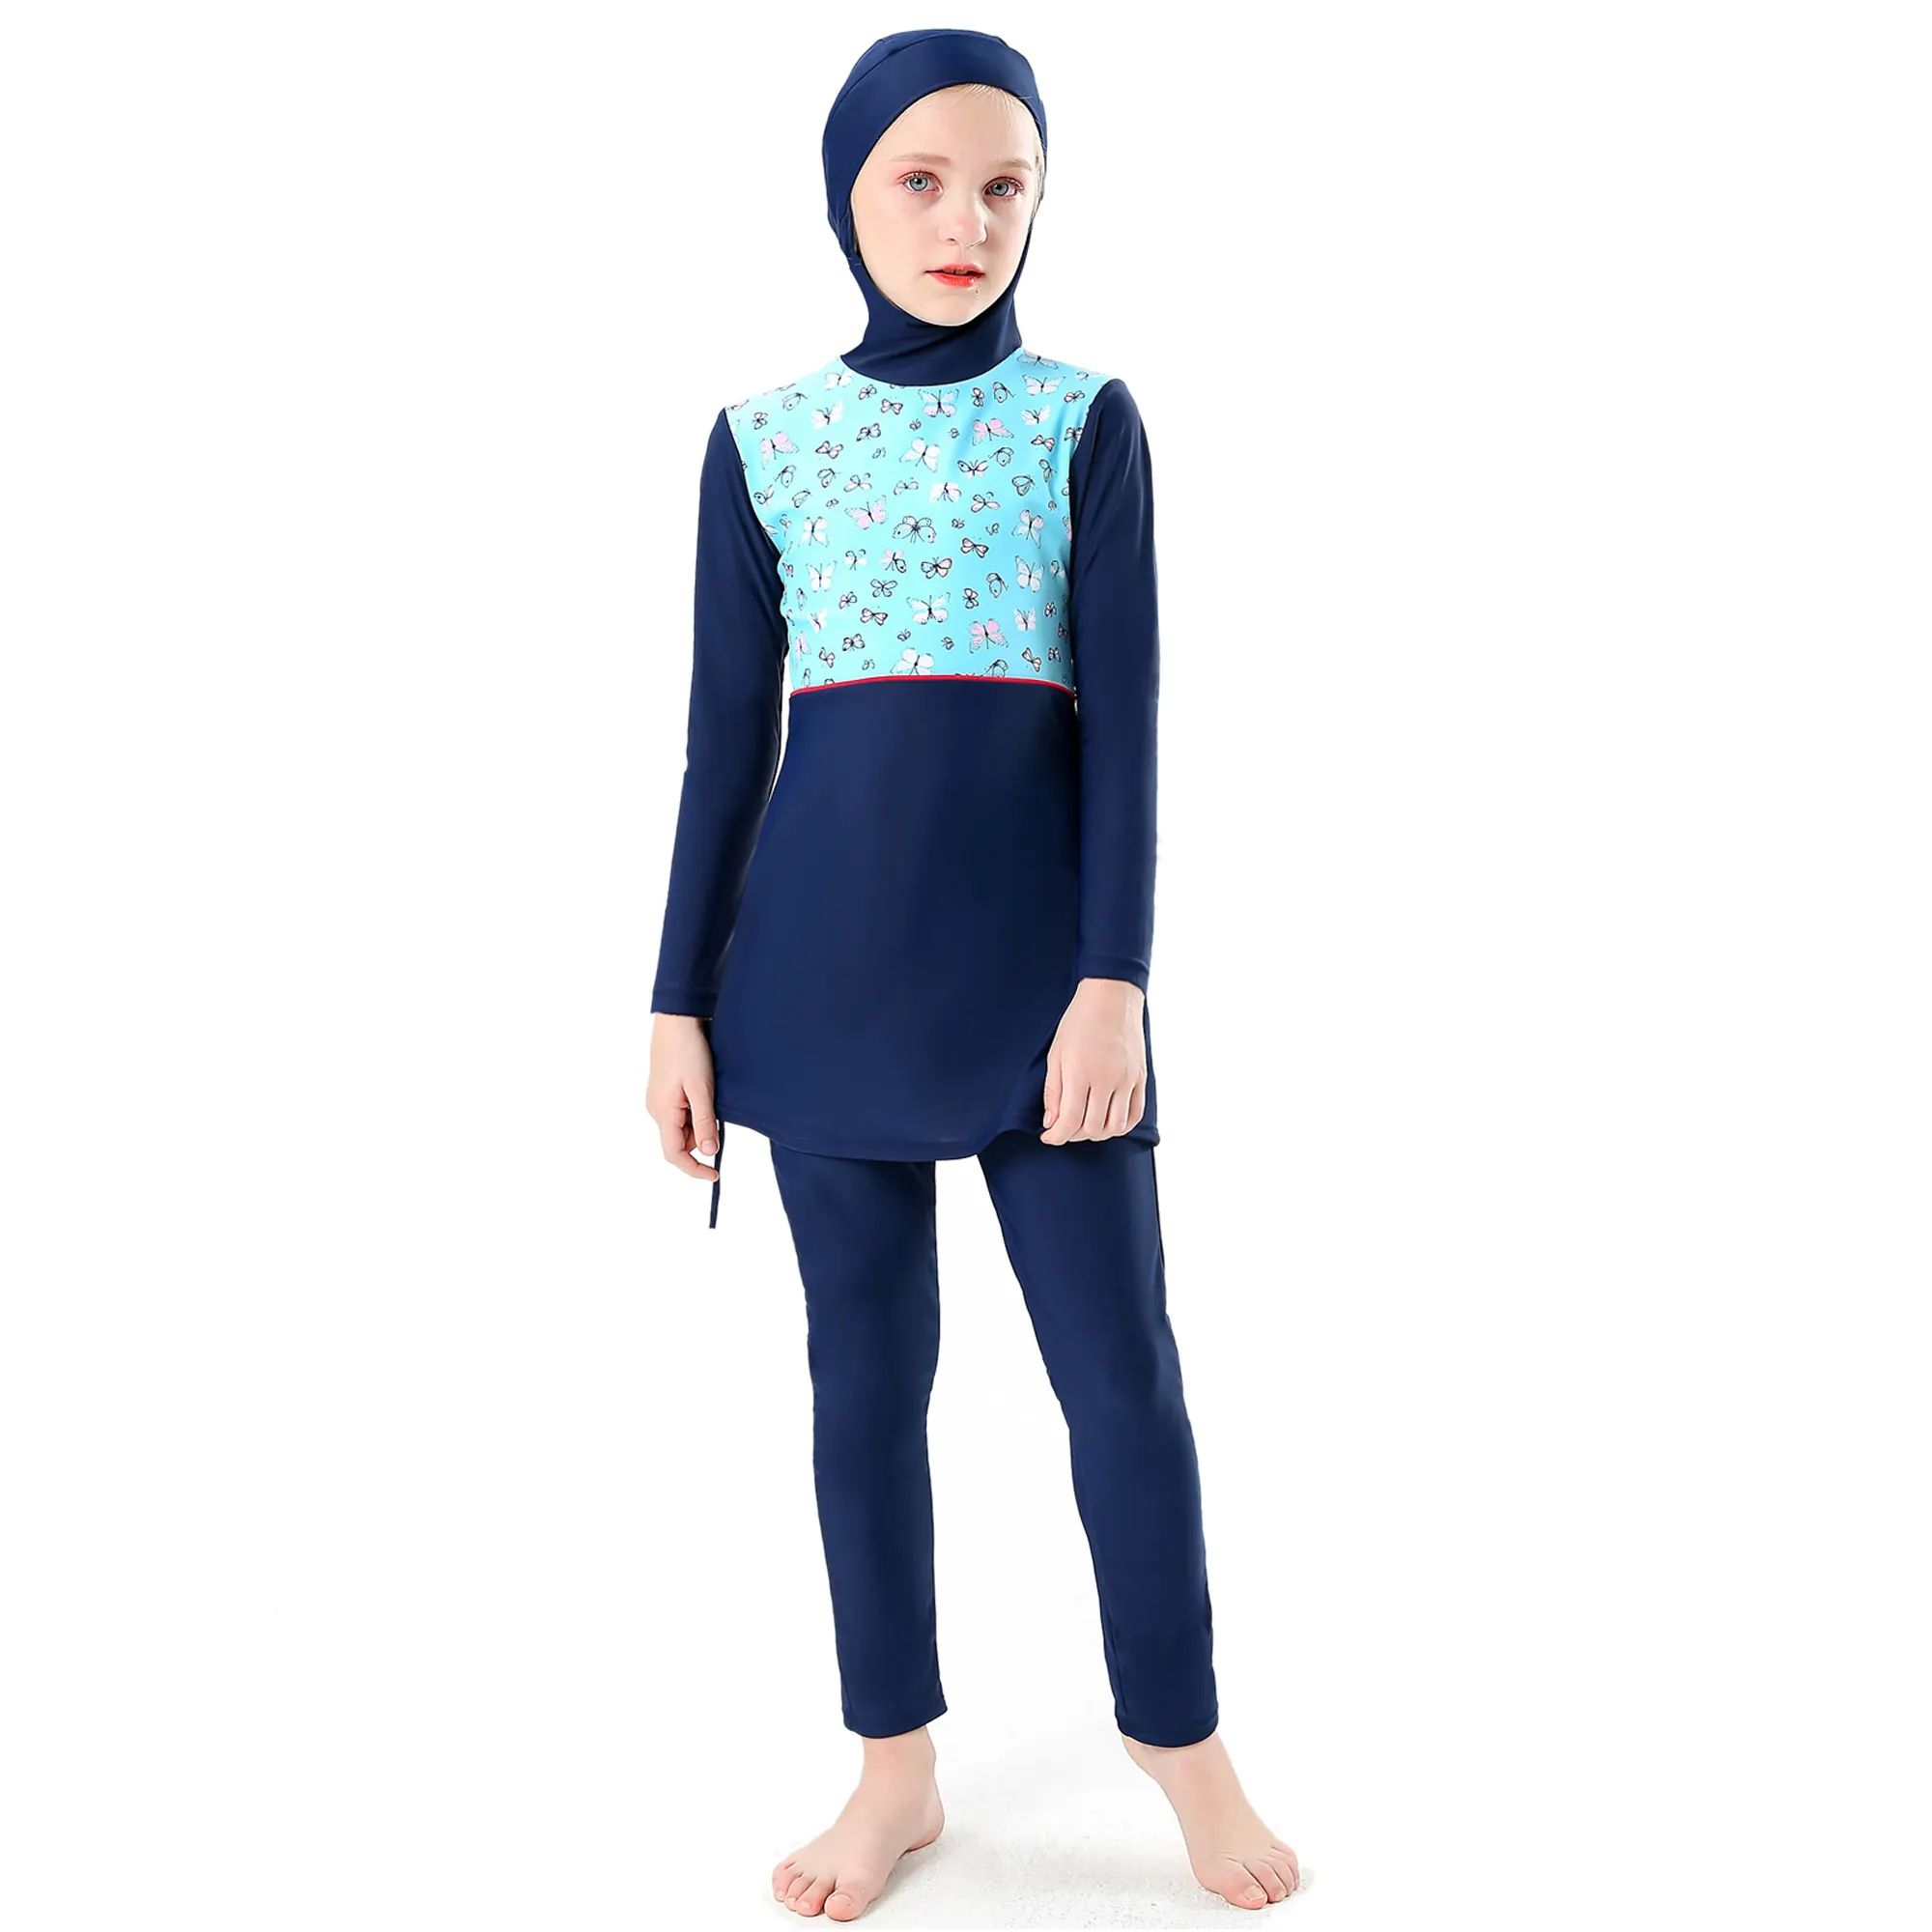 Hijab costume da bagno islamico per bambini costumi da bagno Modest Full Cover Swim Wear manica lunga ragazze Burkini 2 pezzi costume da bagno